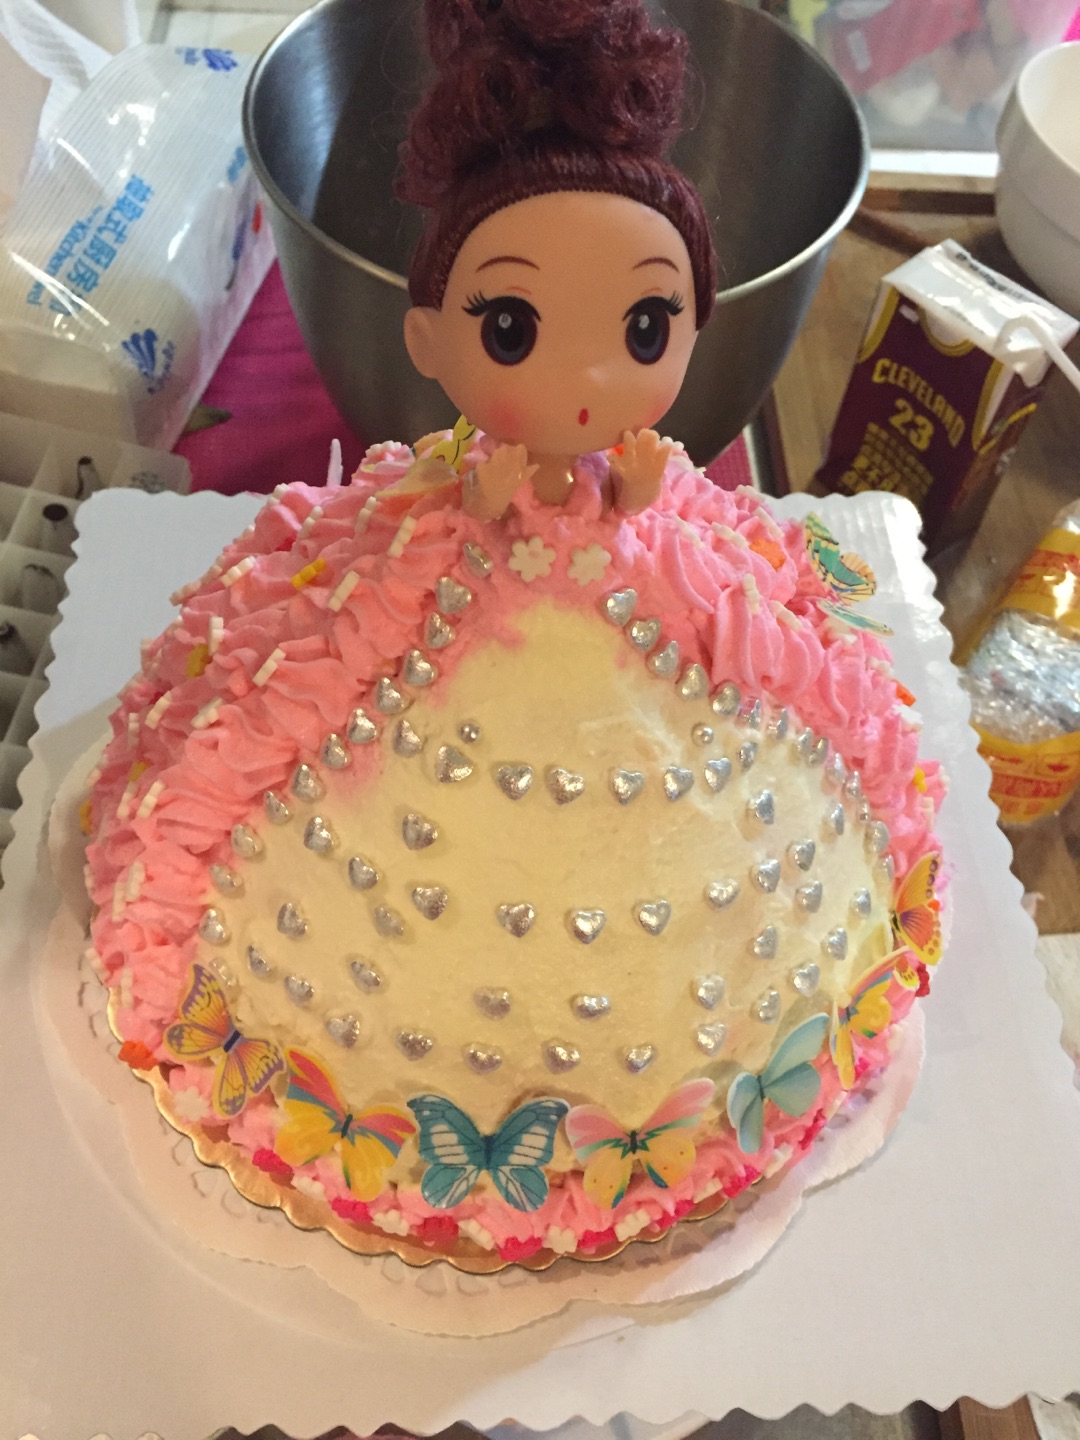 公主女孩翻糖造型蛋糕 | 翻糖造型蛋糕 - Daisycafe